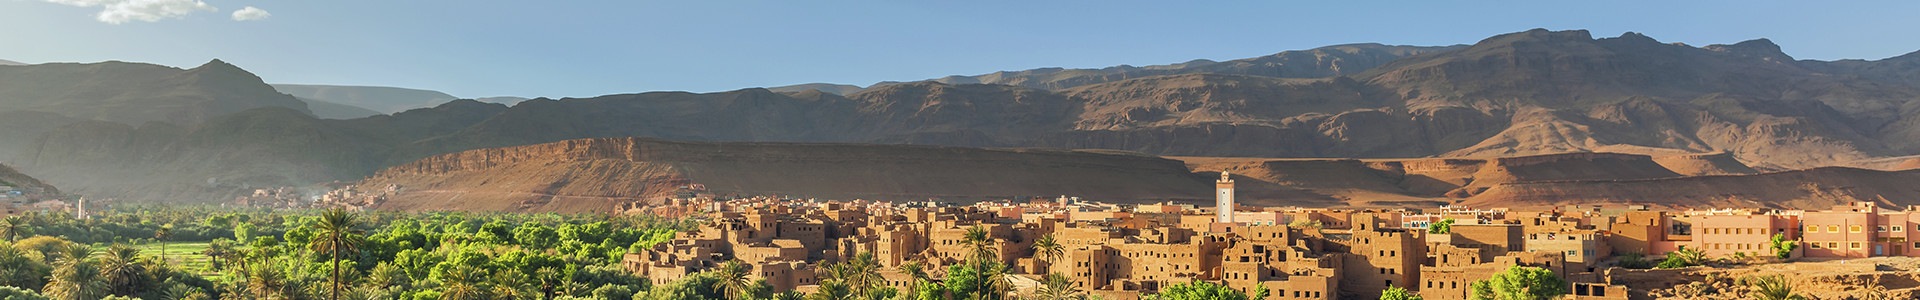 Week-End au Maroc